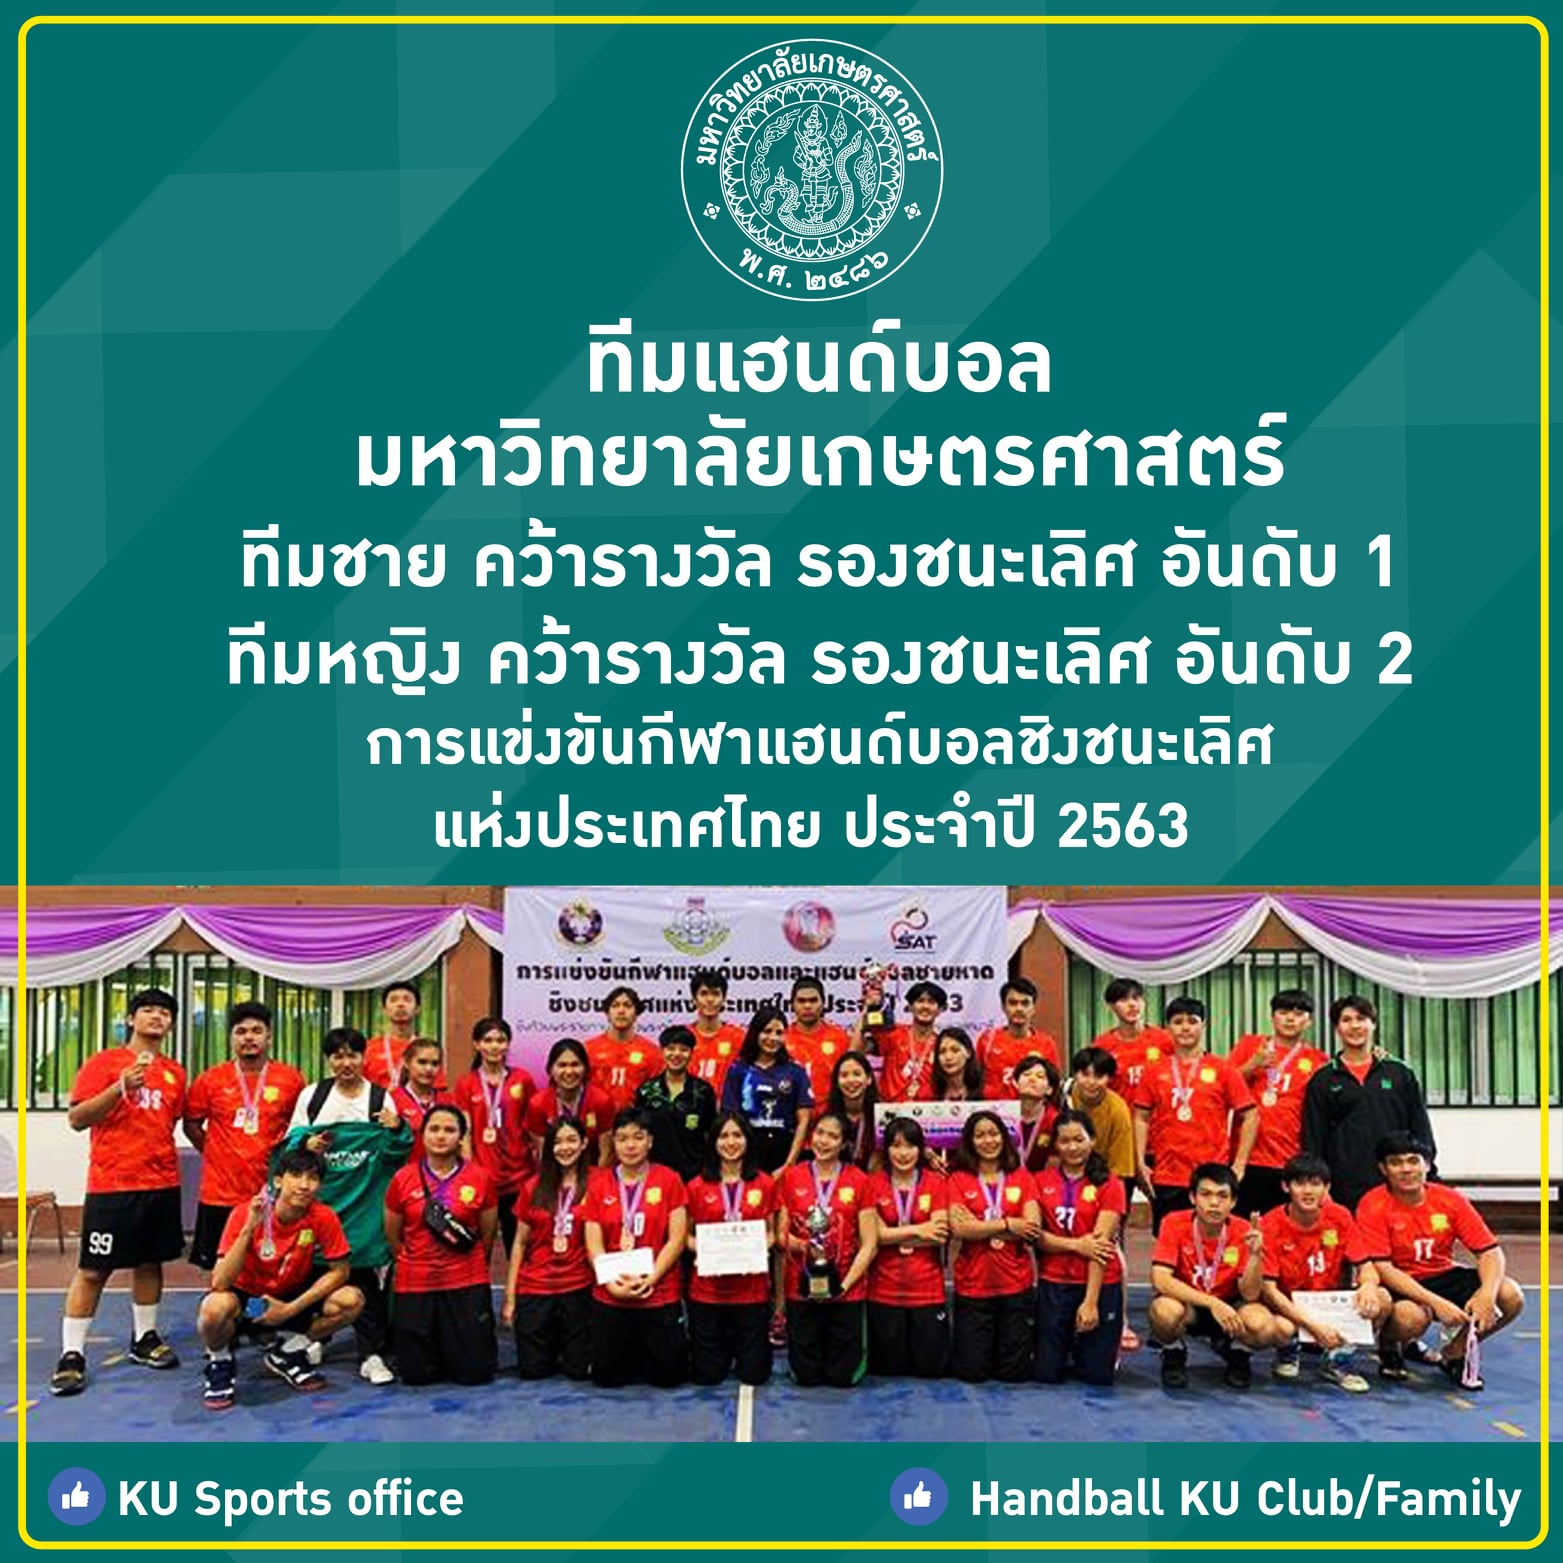 นิสิตภาควิชาพลศึกษา ได้รับรางวัลจากการแข่งขันแฮนด์บอลชิงแชมป์ประเทศไทย